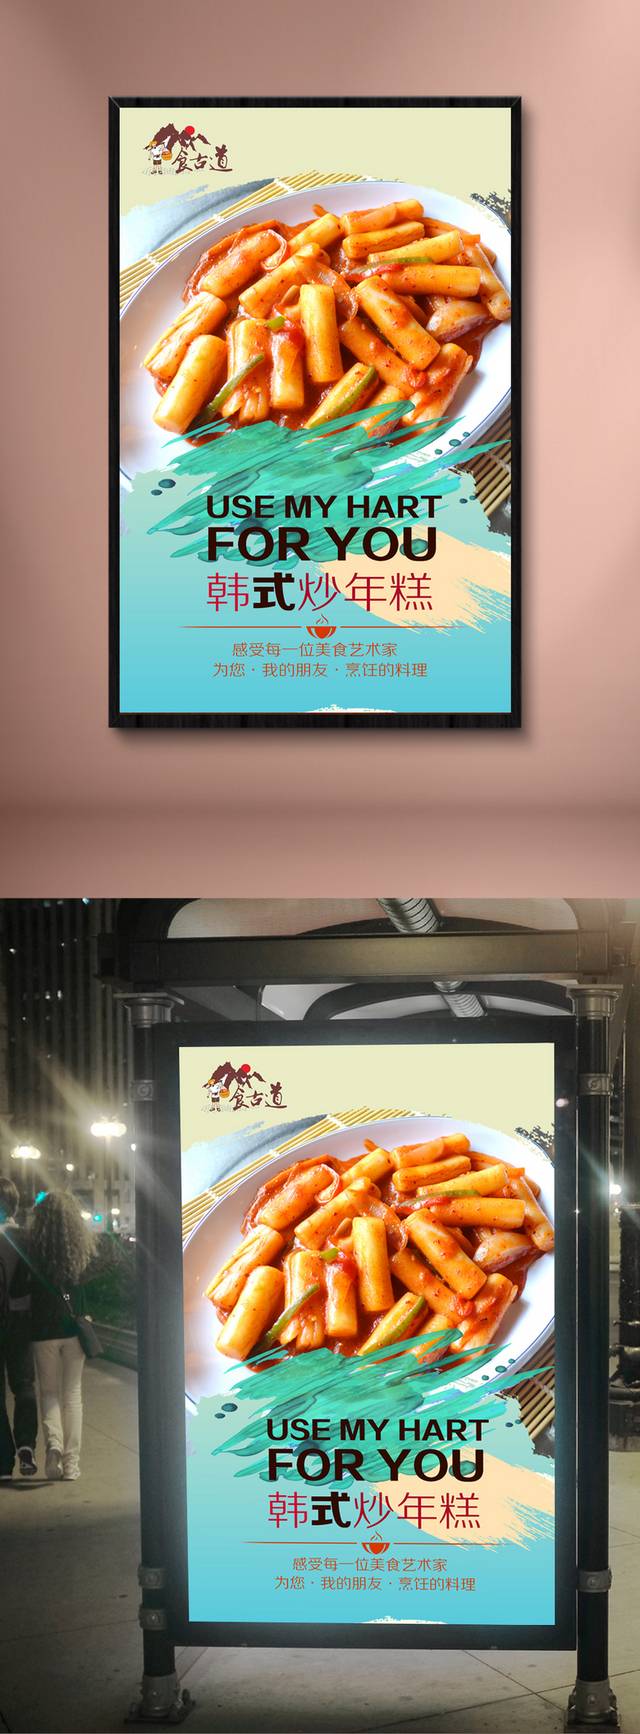 清新韩式炒年糕宣传海报设计